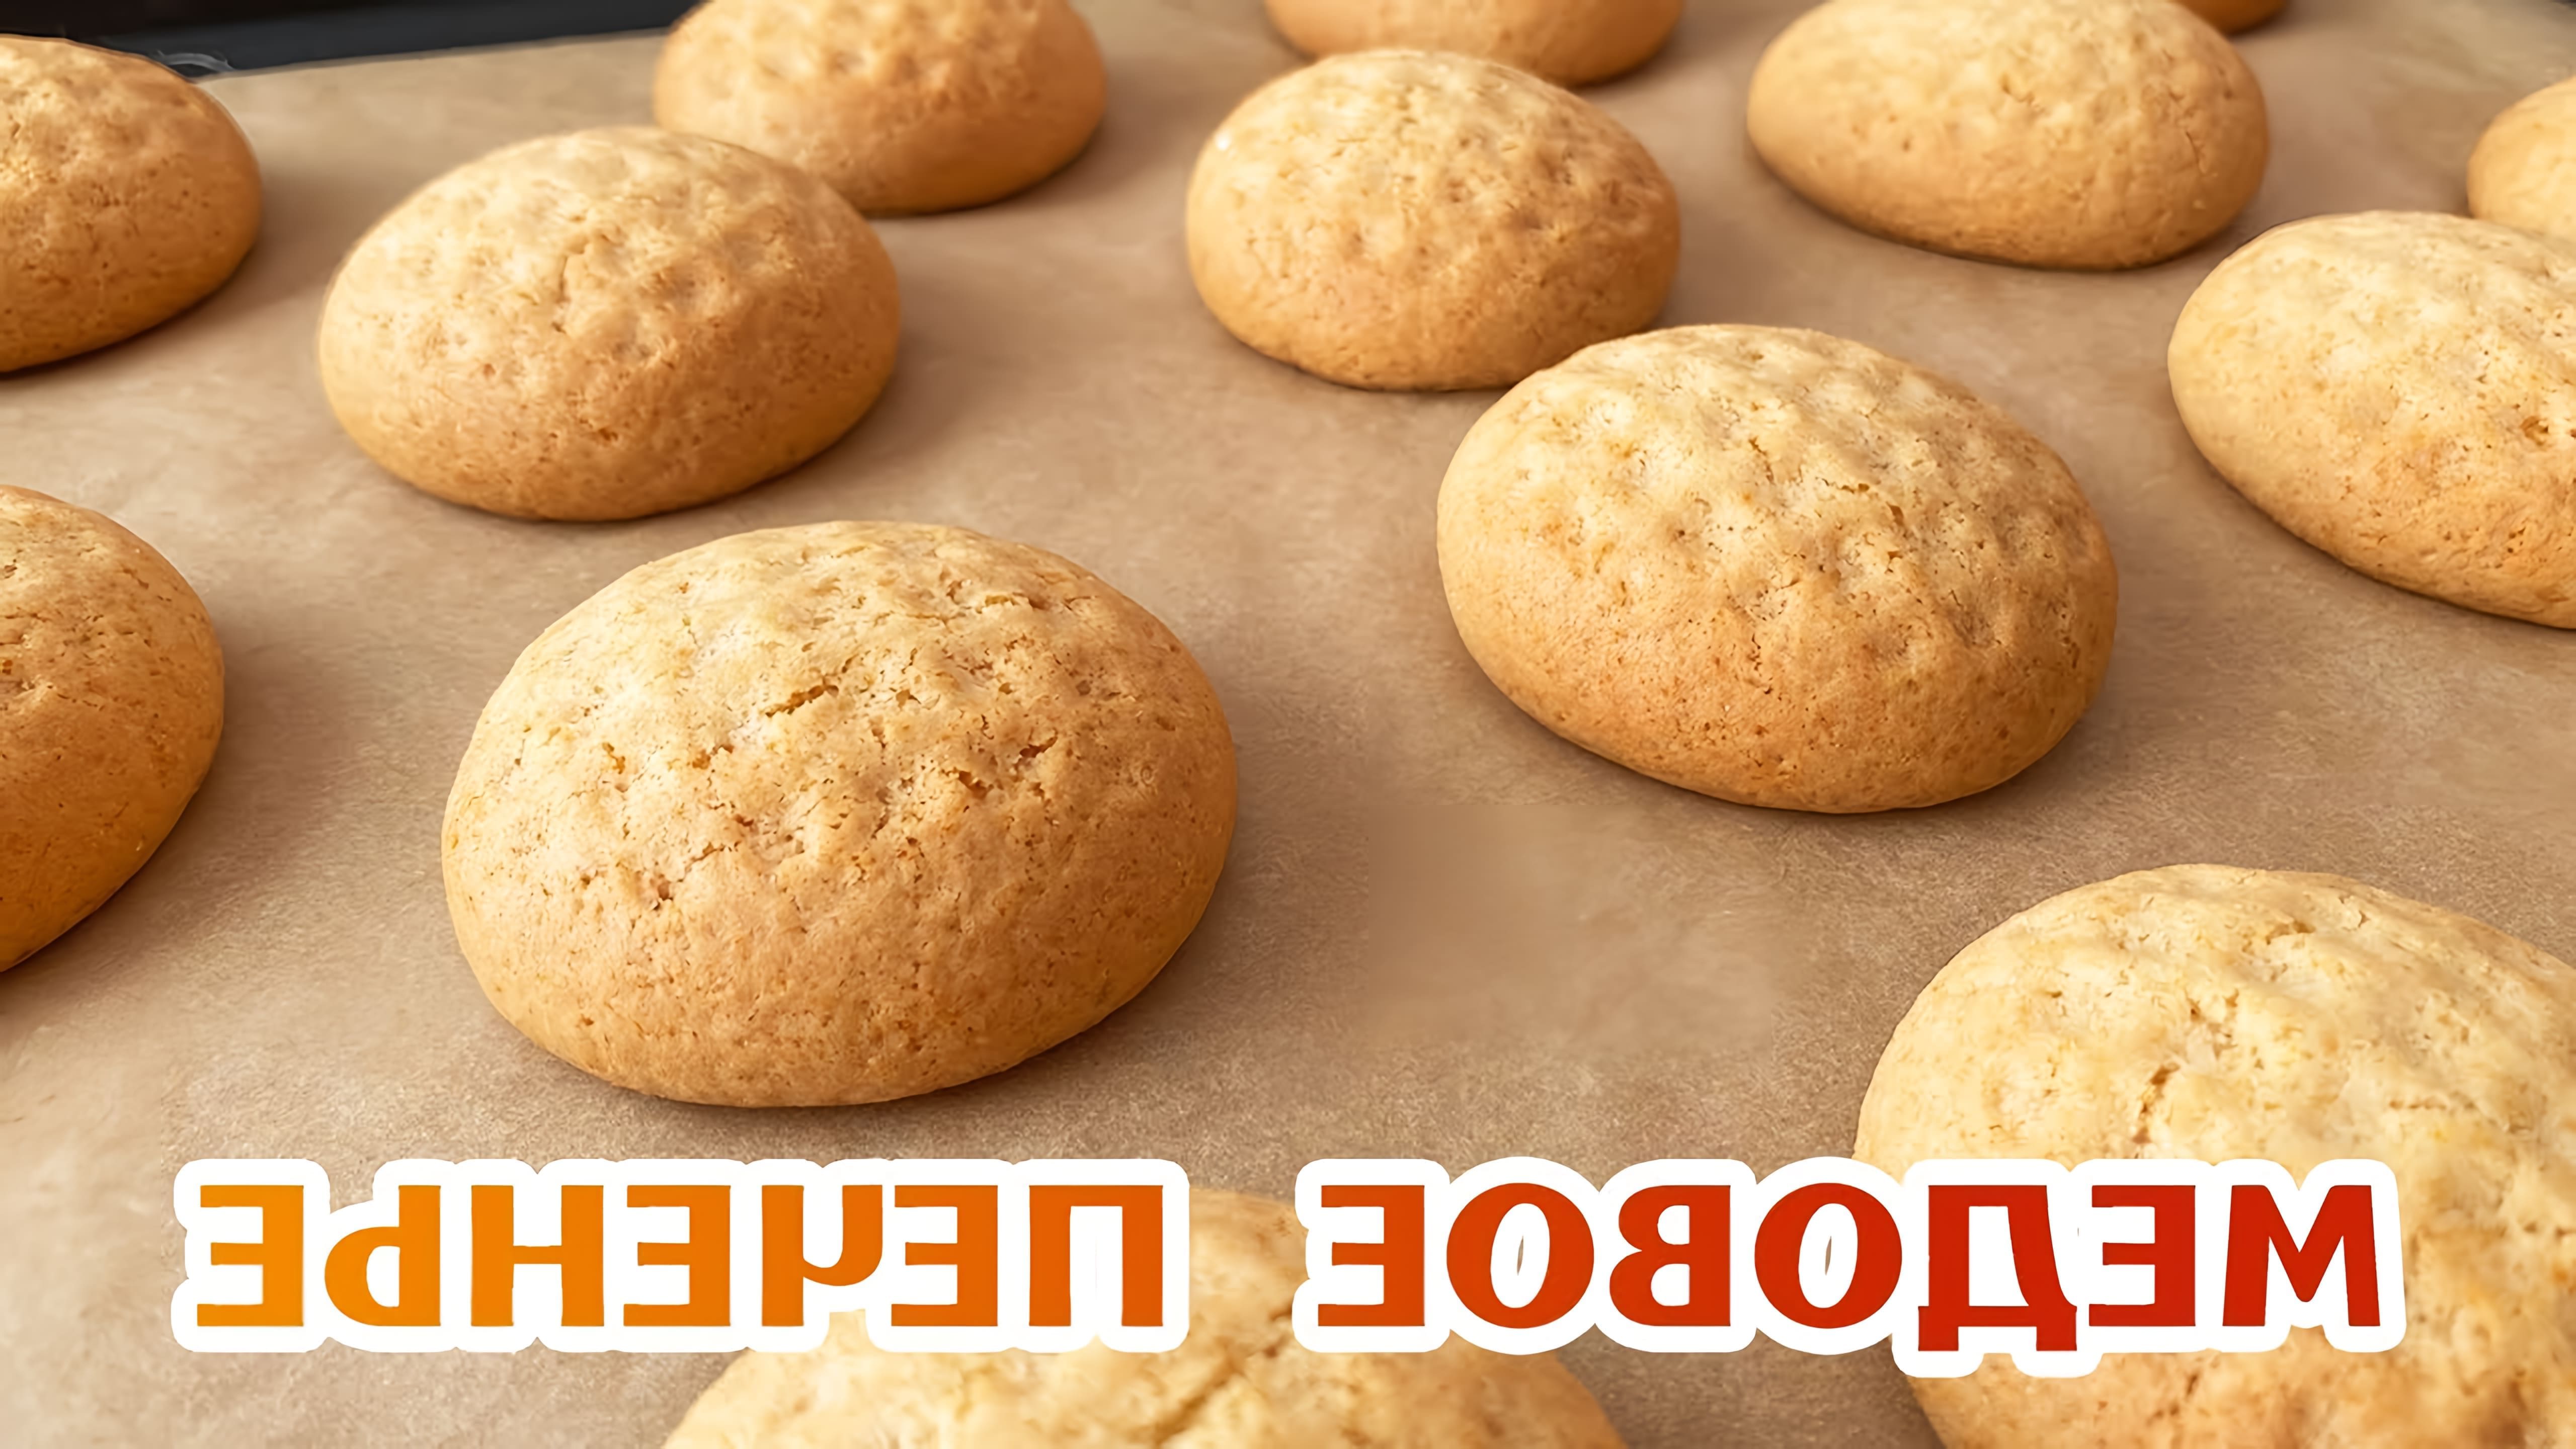 В этом видео демонстрируется простой и быстрый рецепт медового печенья, который можно приготовить всего за 10 минут